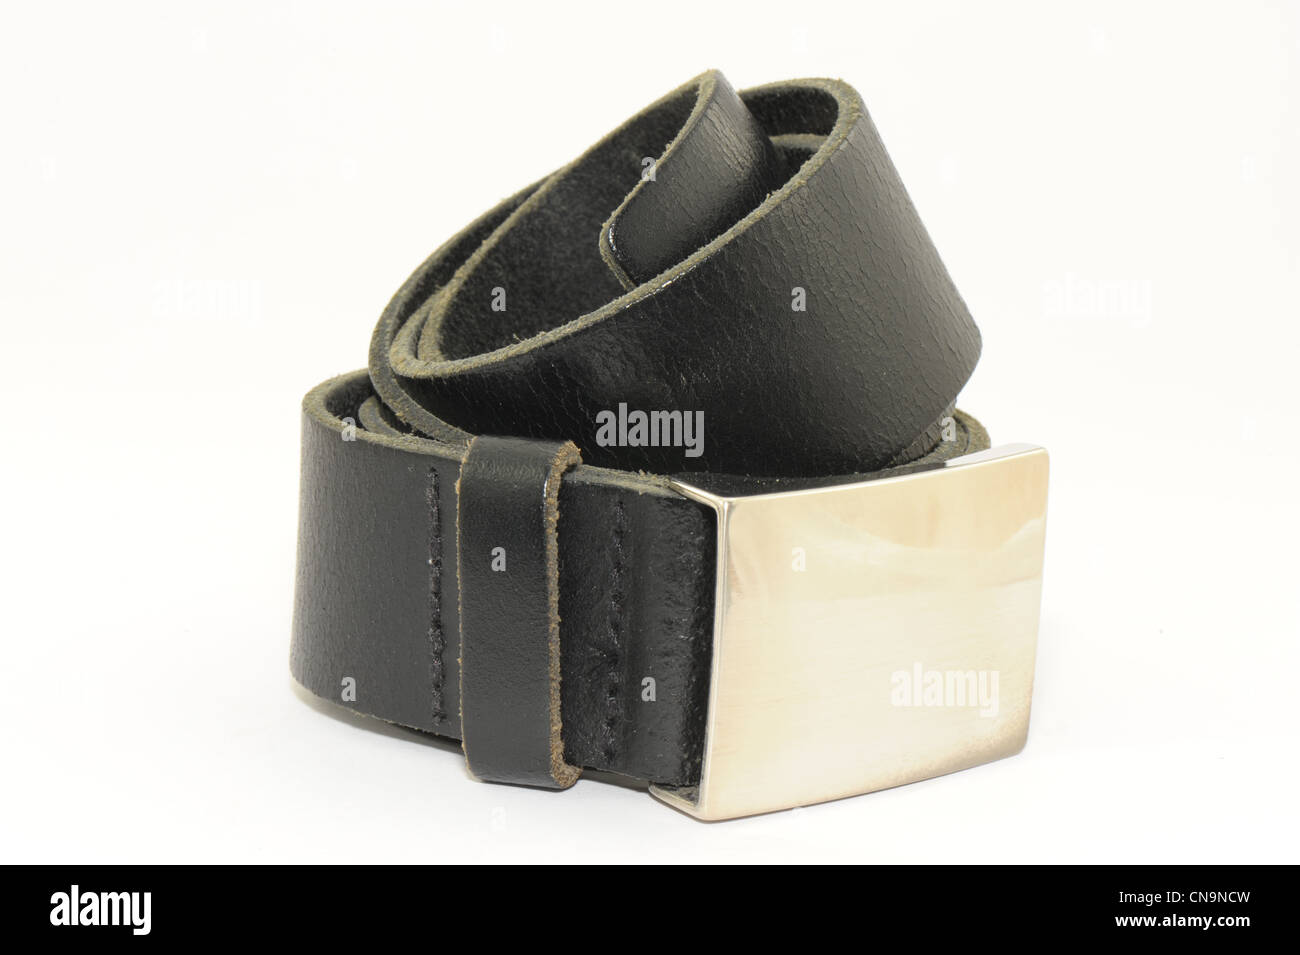 Herren Gürtel aus schwarzes Leder mit Silberschnalle Verschluss genommen  auf weißem Hintergrund Stockfotografie - Alamy